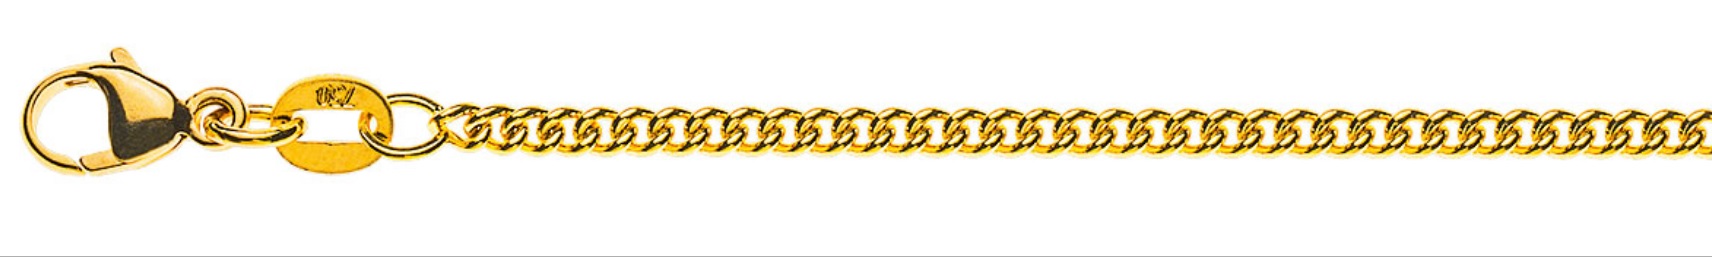 AURONOS Prestige Halskette Gelbgold 18K Rundpanzerkette 42cm 2.1mm